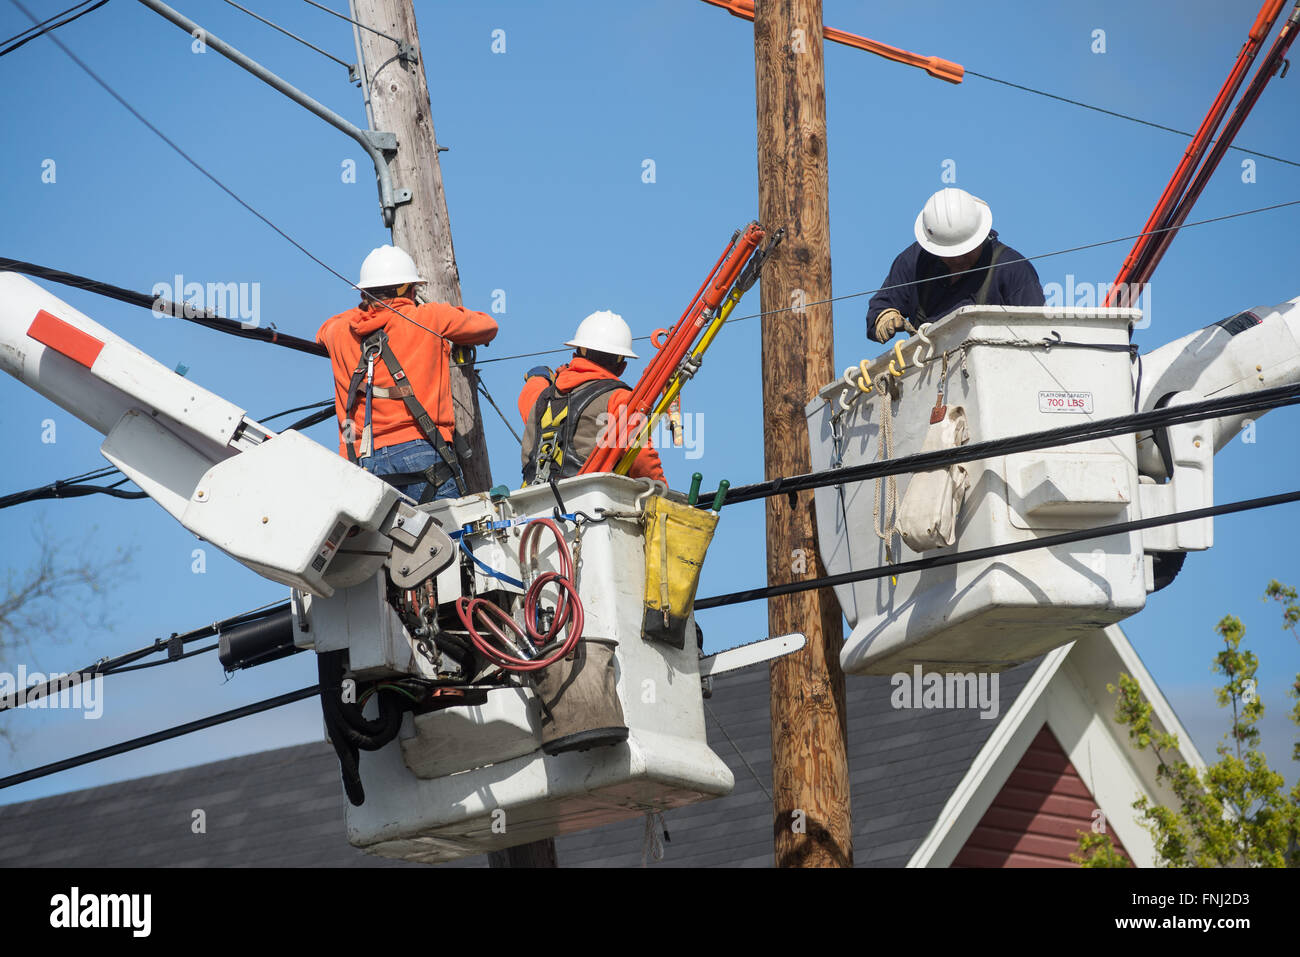 Drei Lineman in Eimern über Häuser Hign in der Luft zu schweben, wie sie arbeiten, um einen Strommast zu ersetzen. Stockfoto